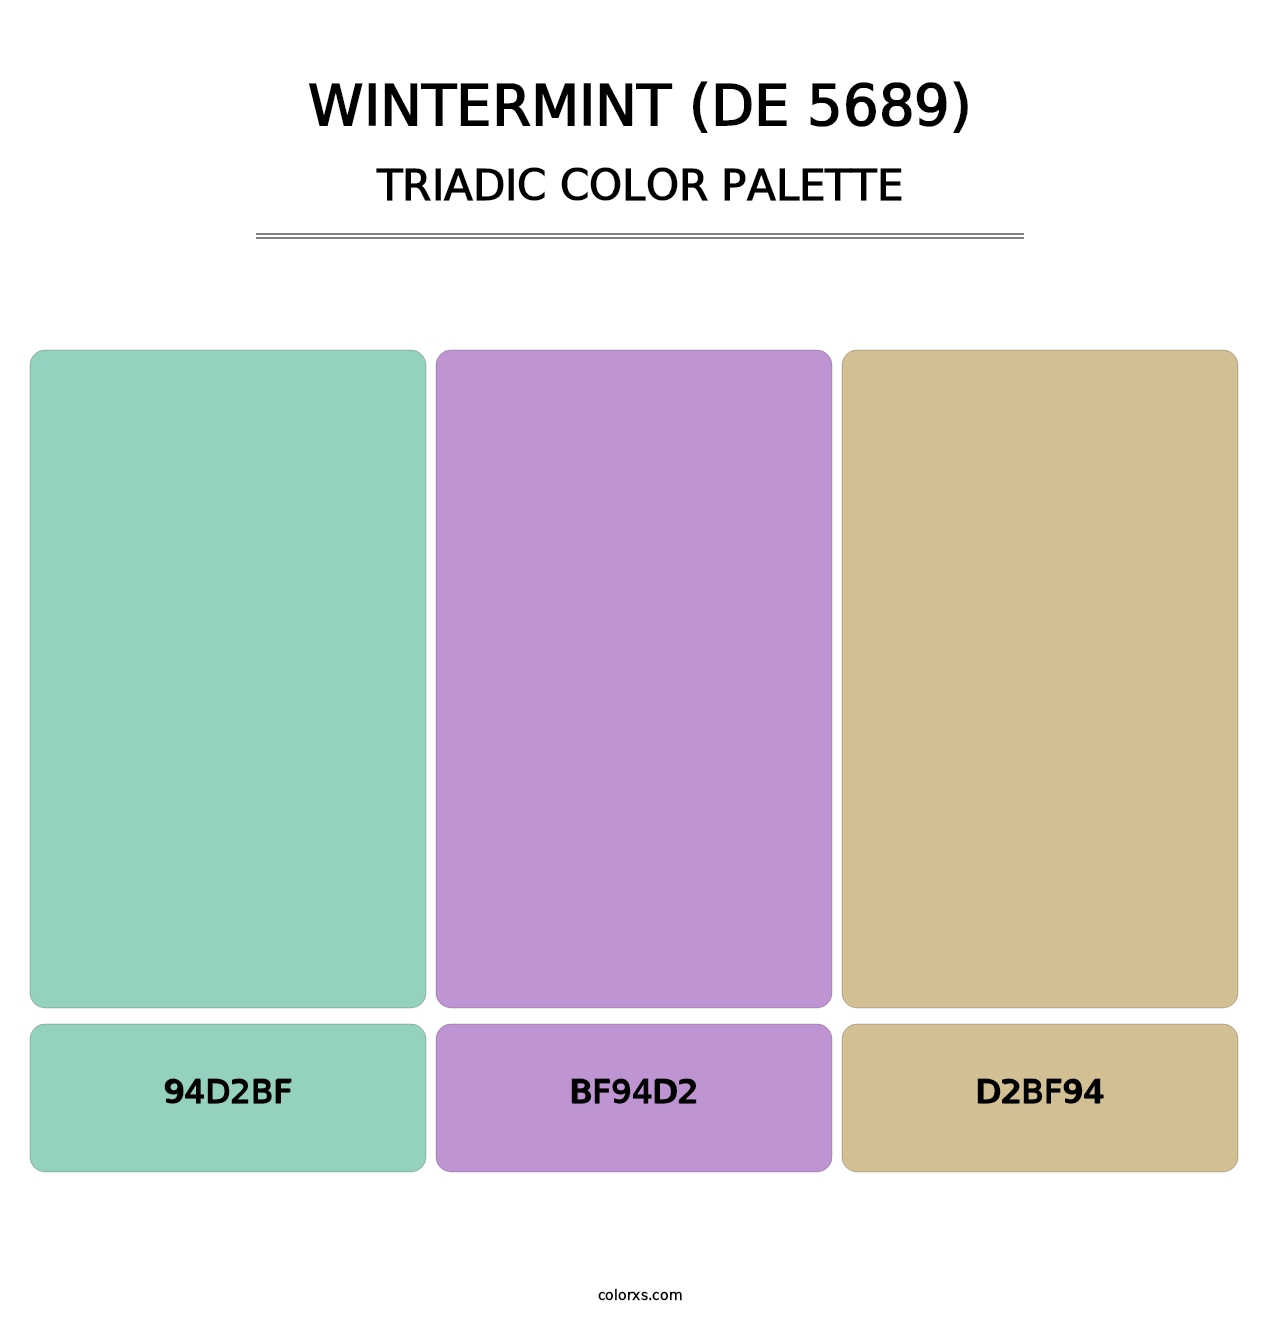 Wintermint (DE 5689) - Triadic Color Palette